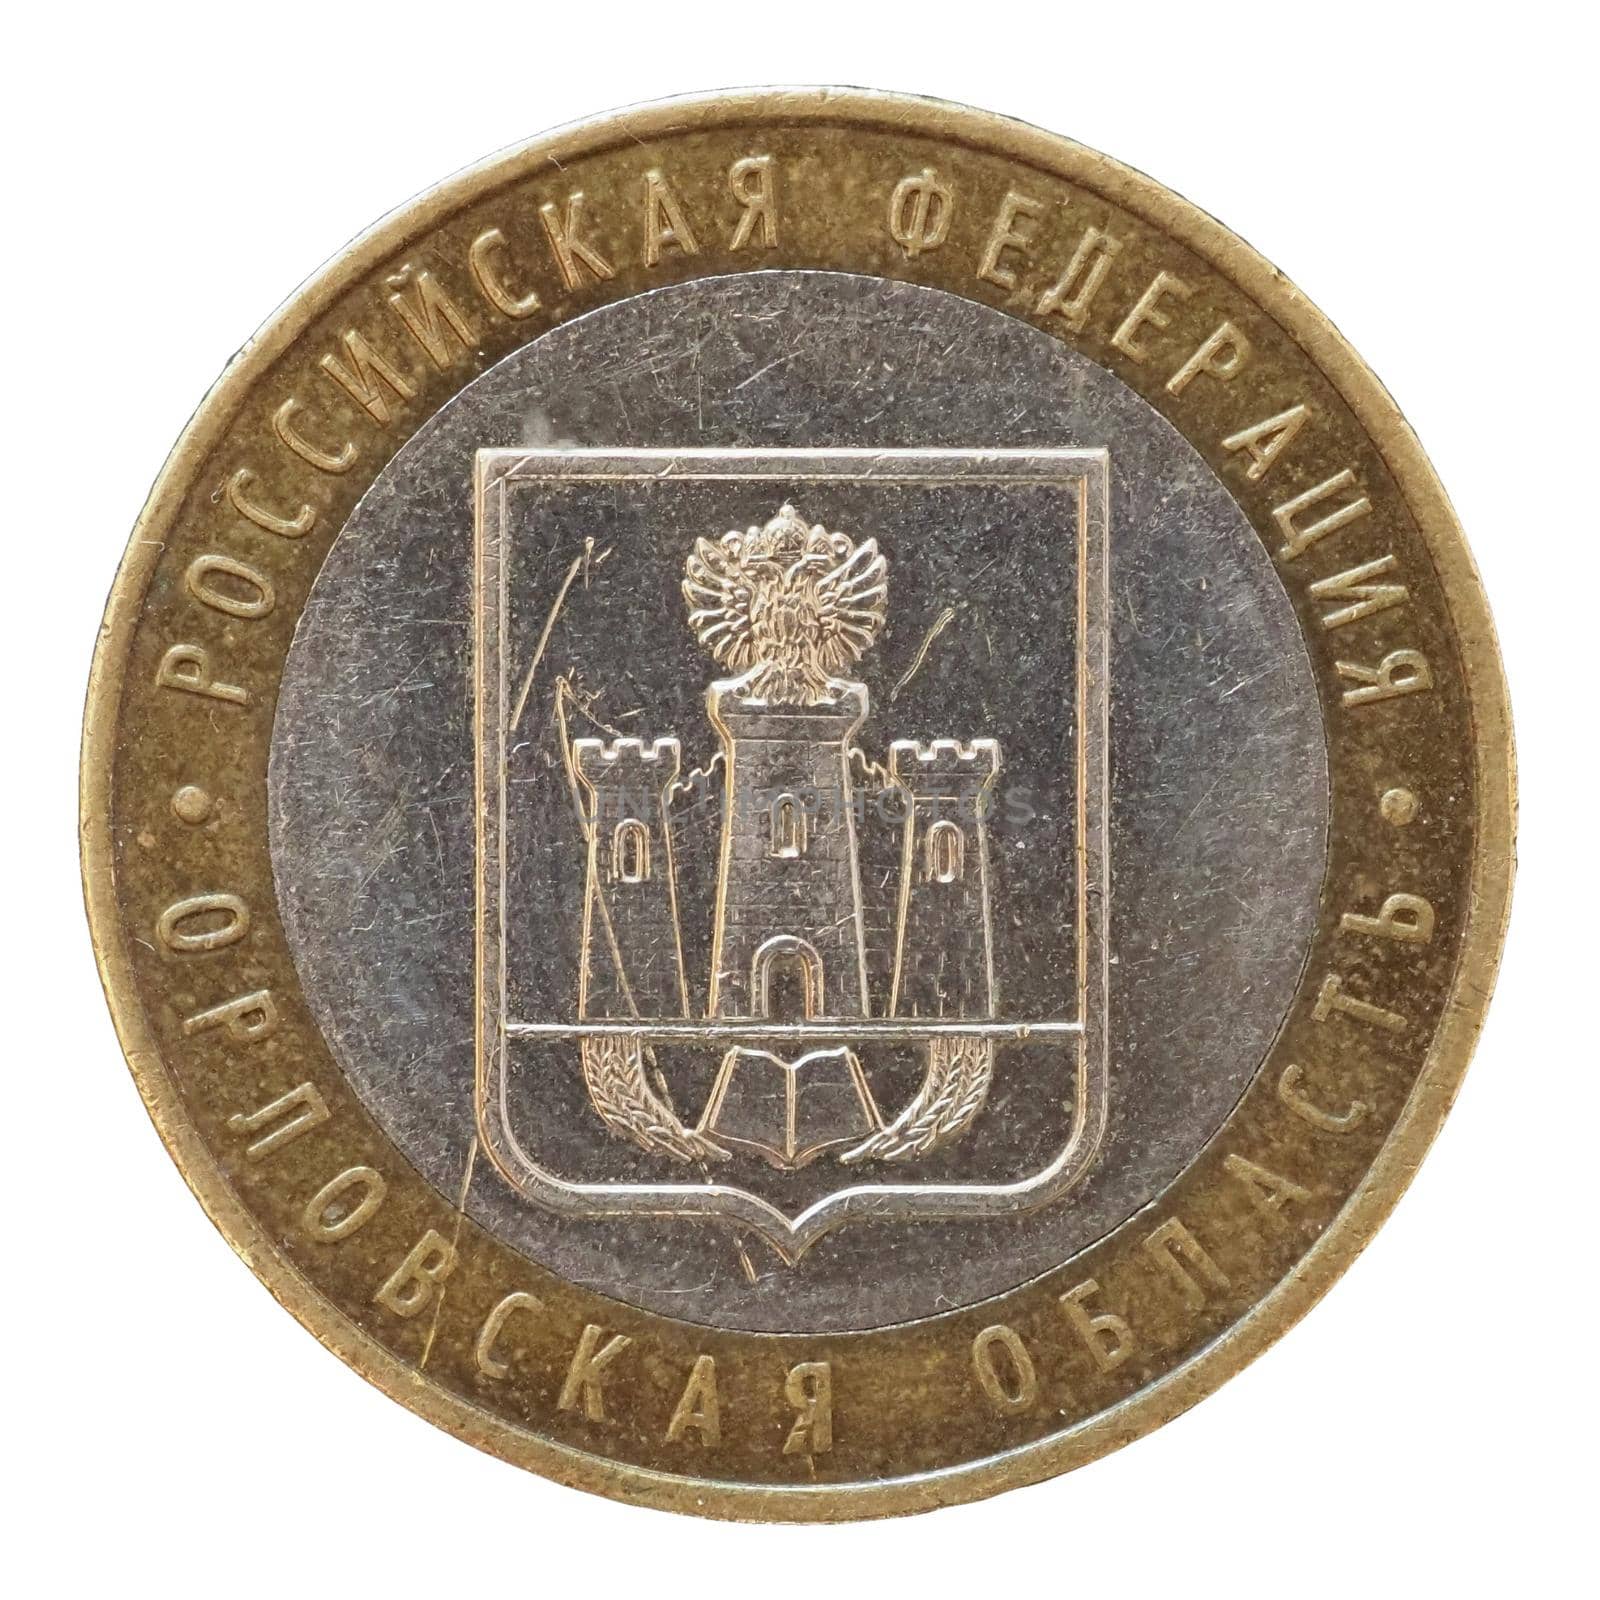 10 Ruble coin, Russia by claudiodivizia